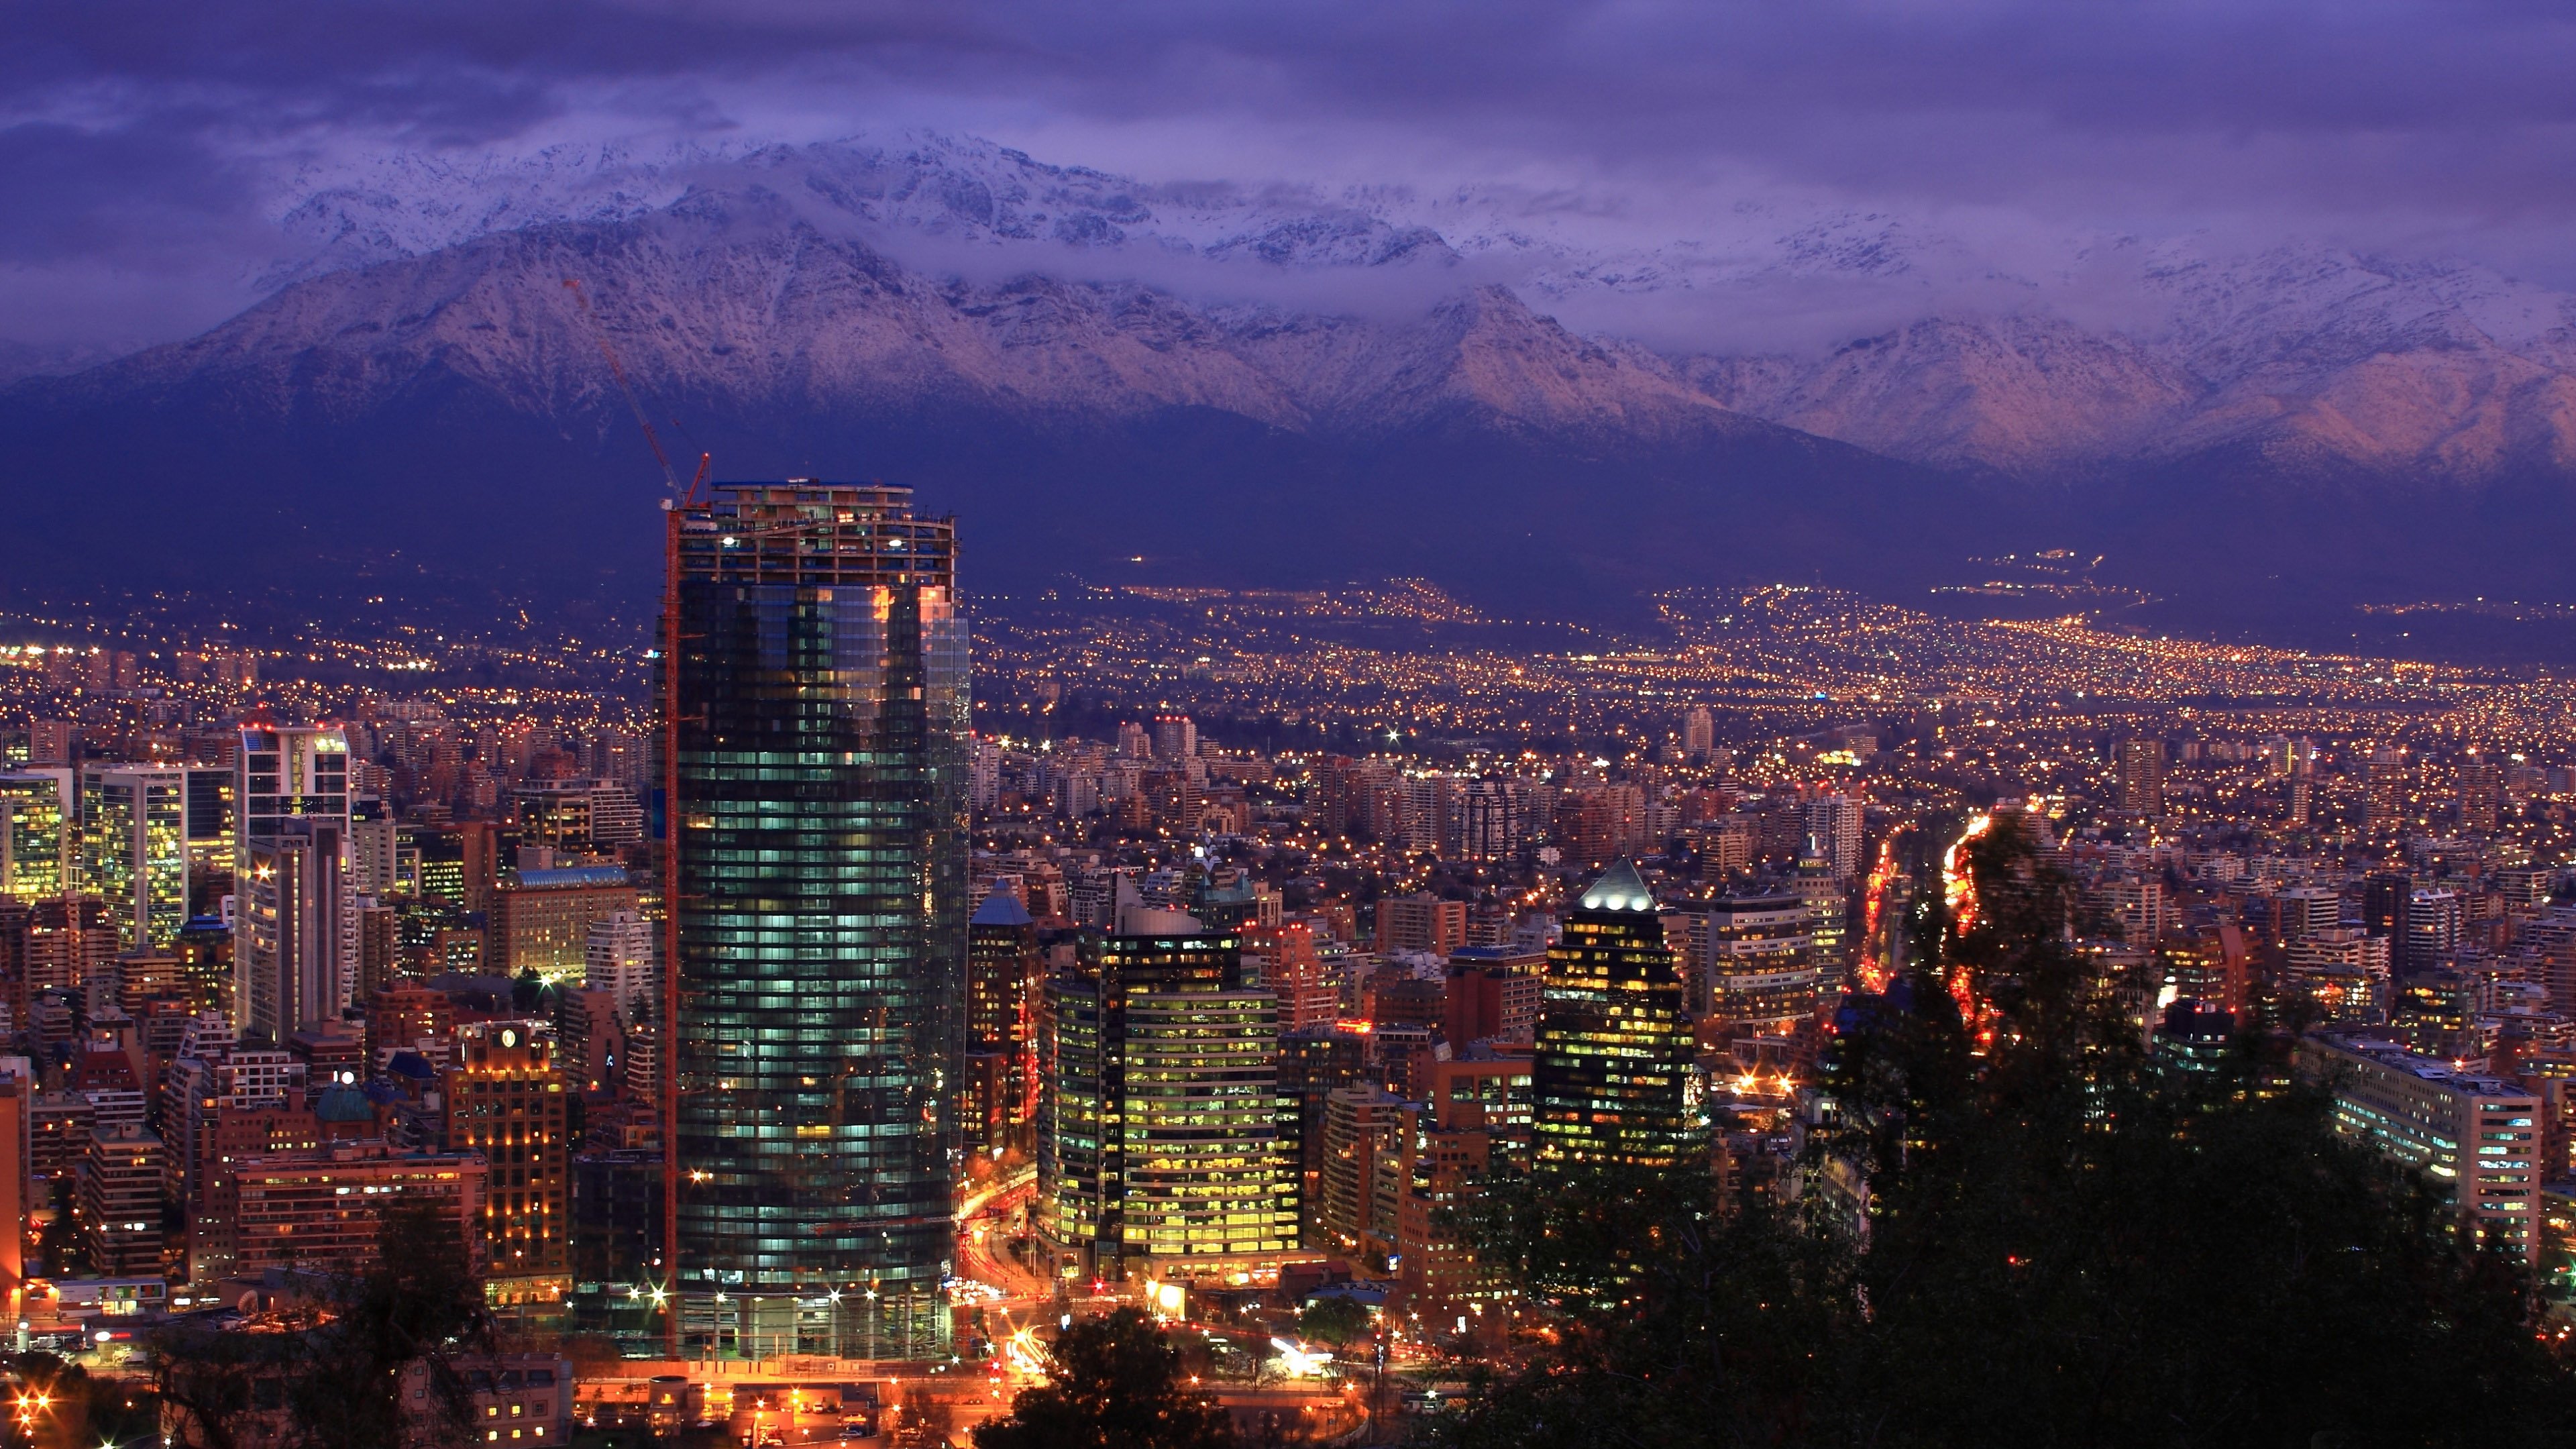 Santiago De Chile , HD Wallpaper & Backgrounds